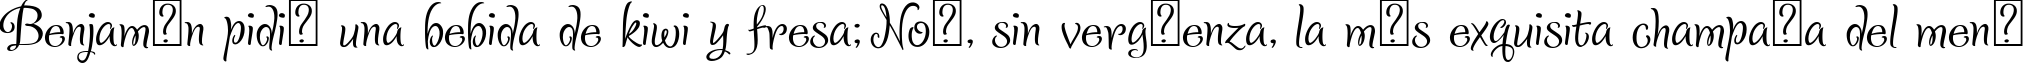 Пример написания шрифтом Sladkoeshka текста на испанском